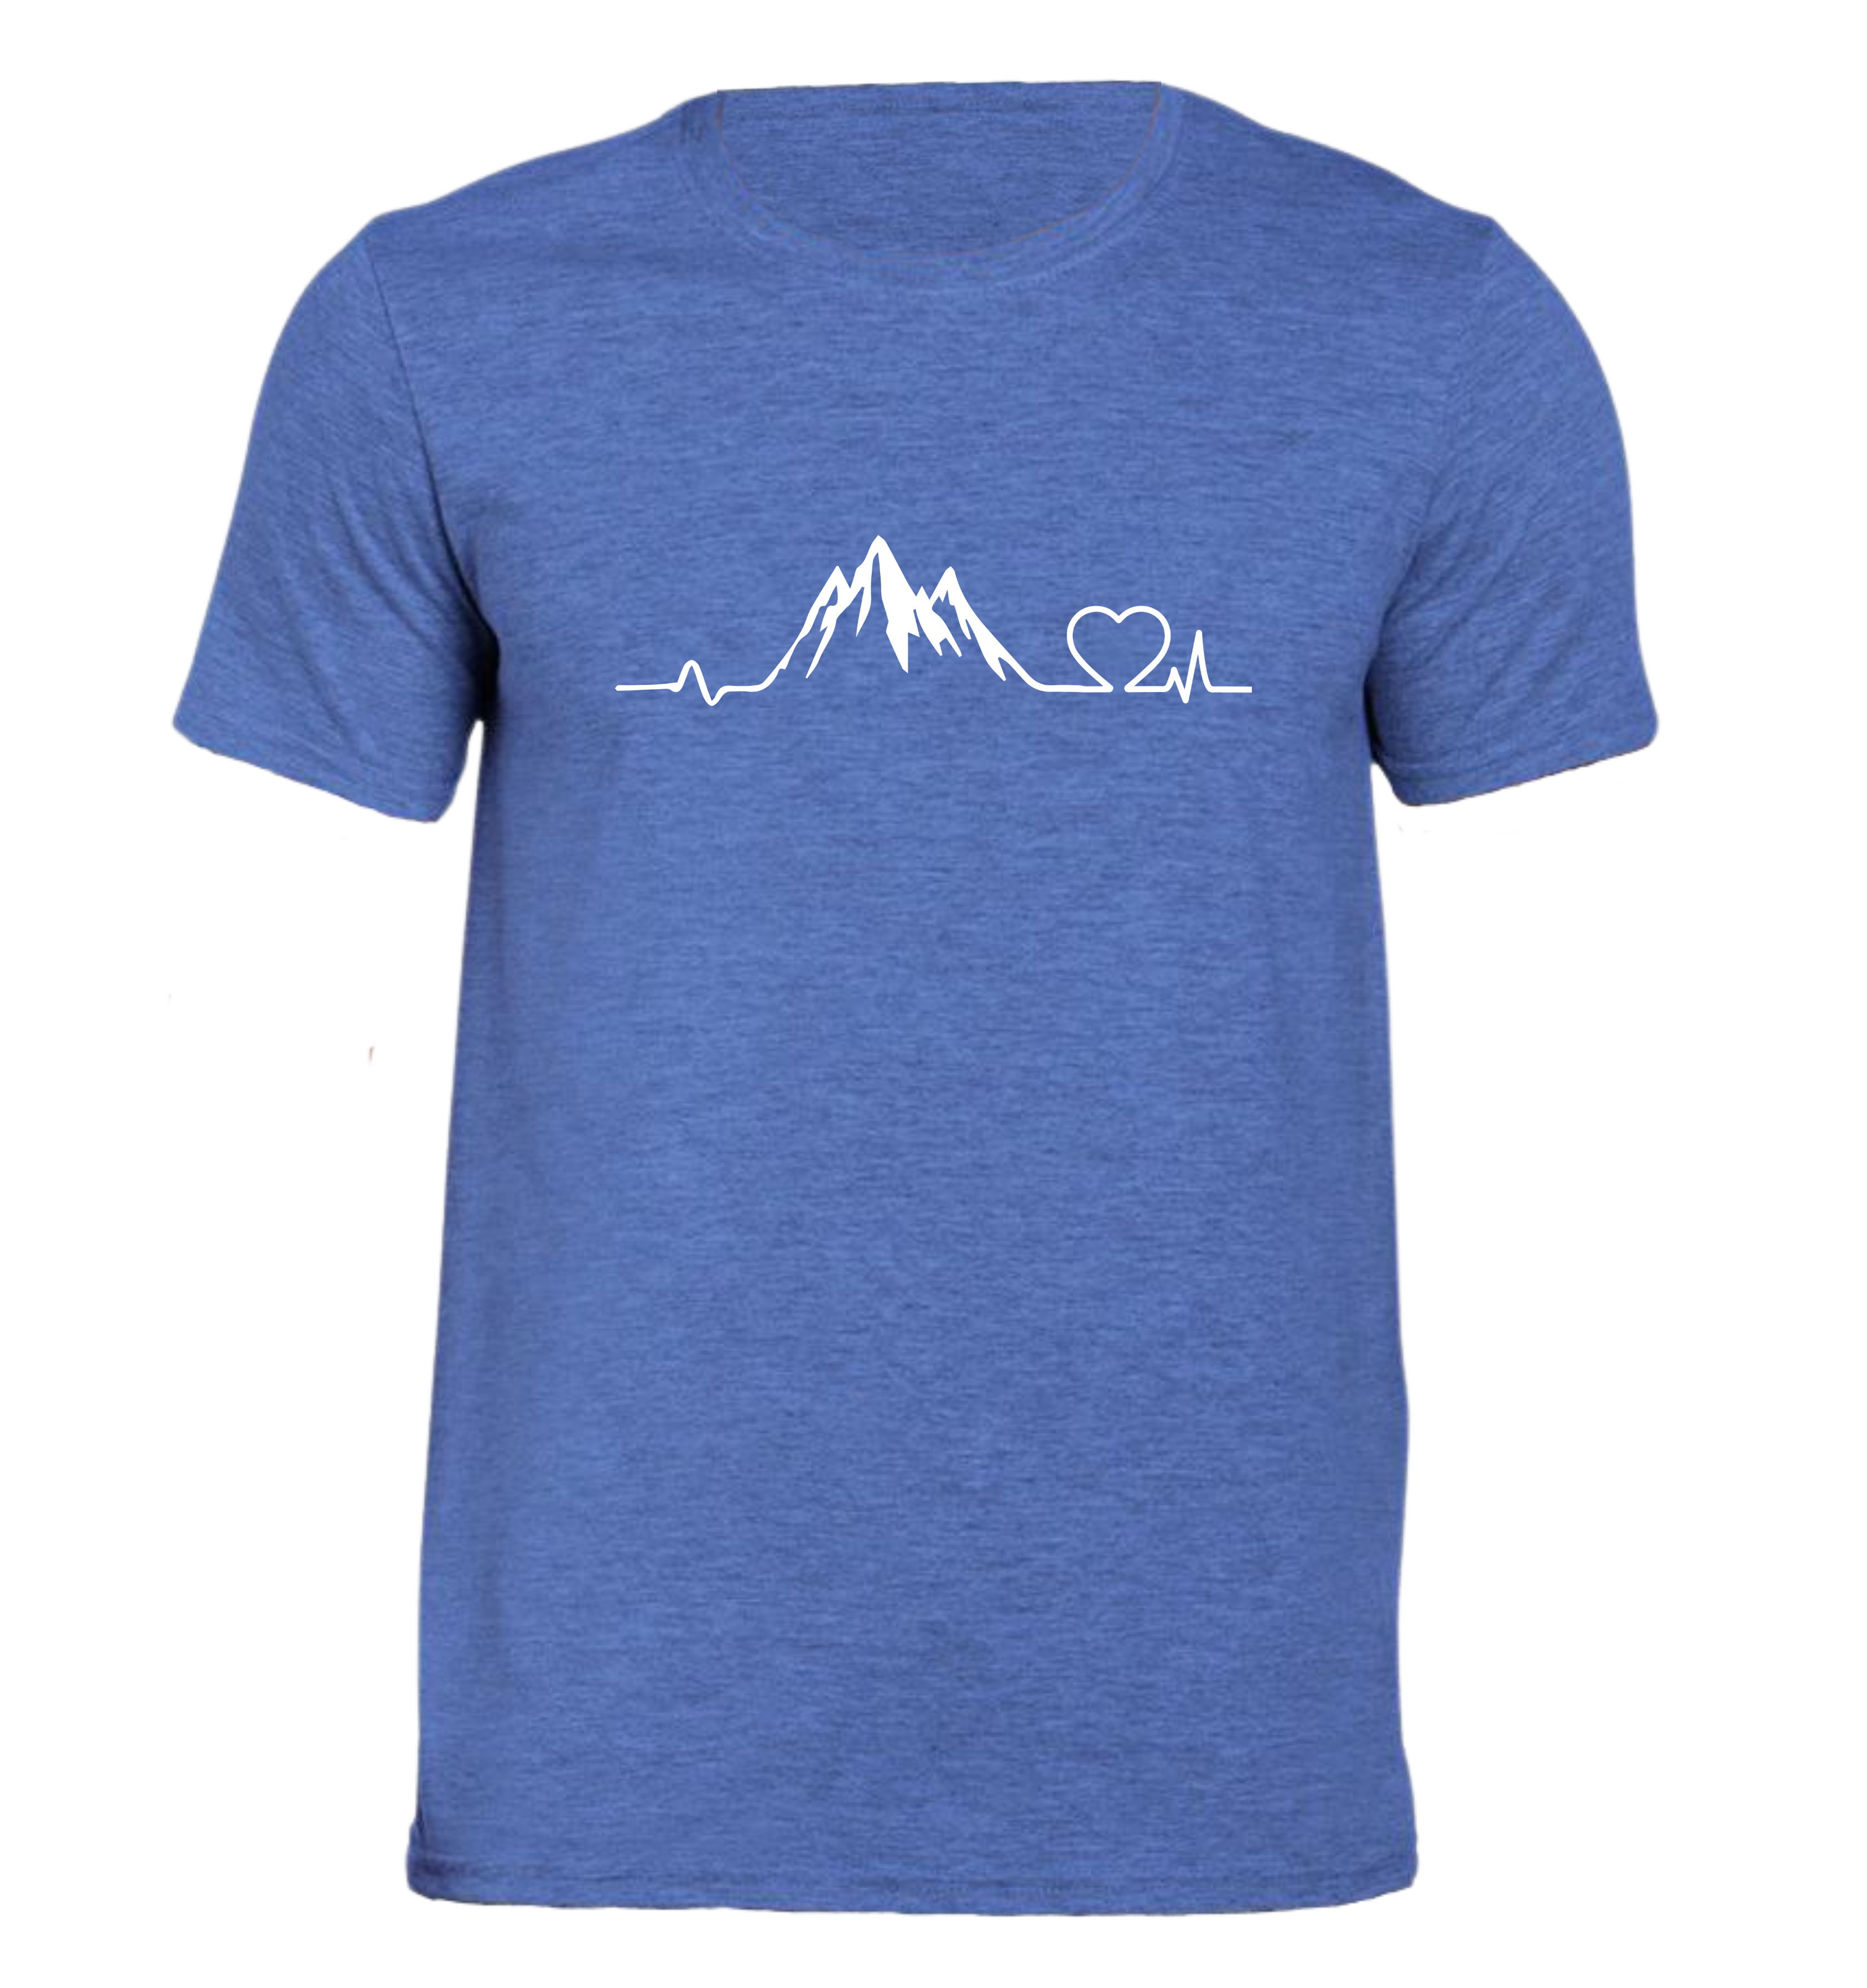 Battito montagna e cuore - Maglietta Uomo